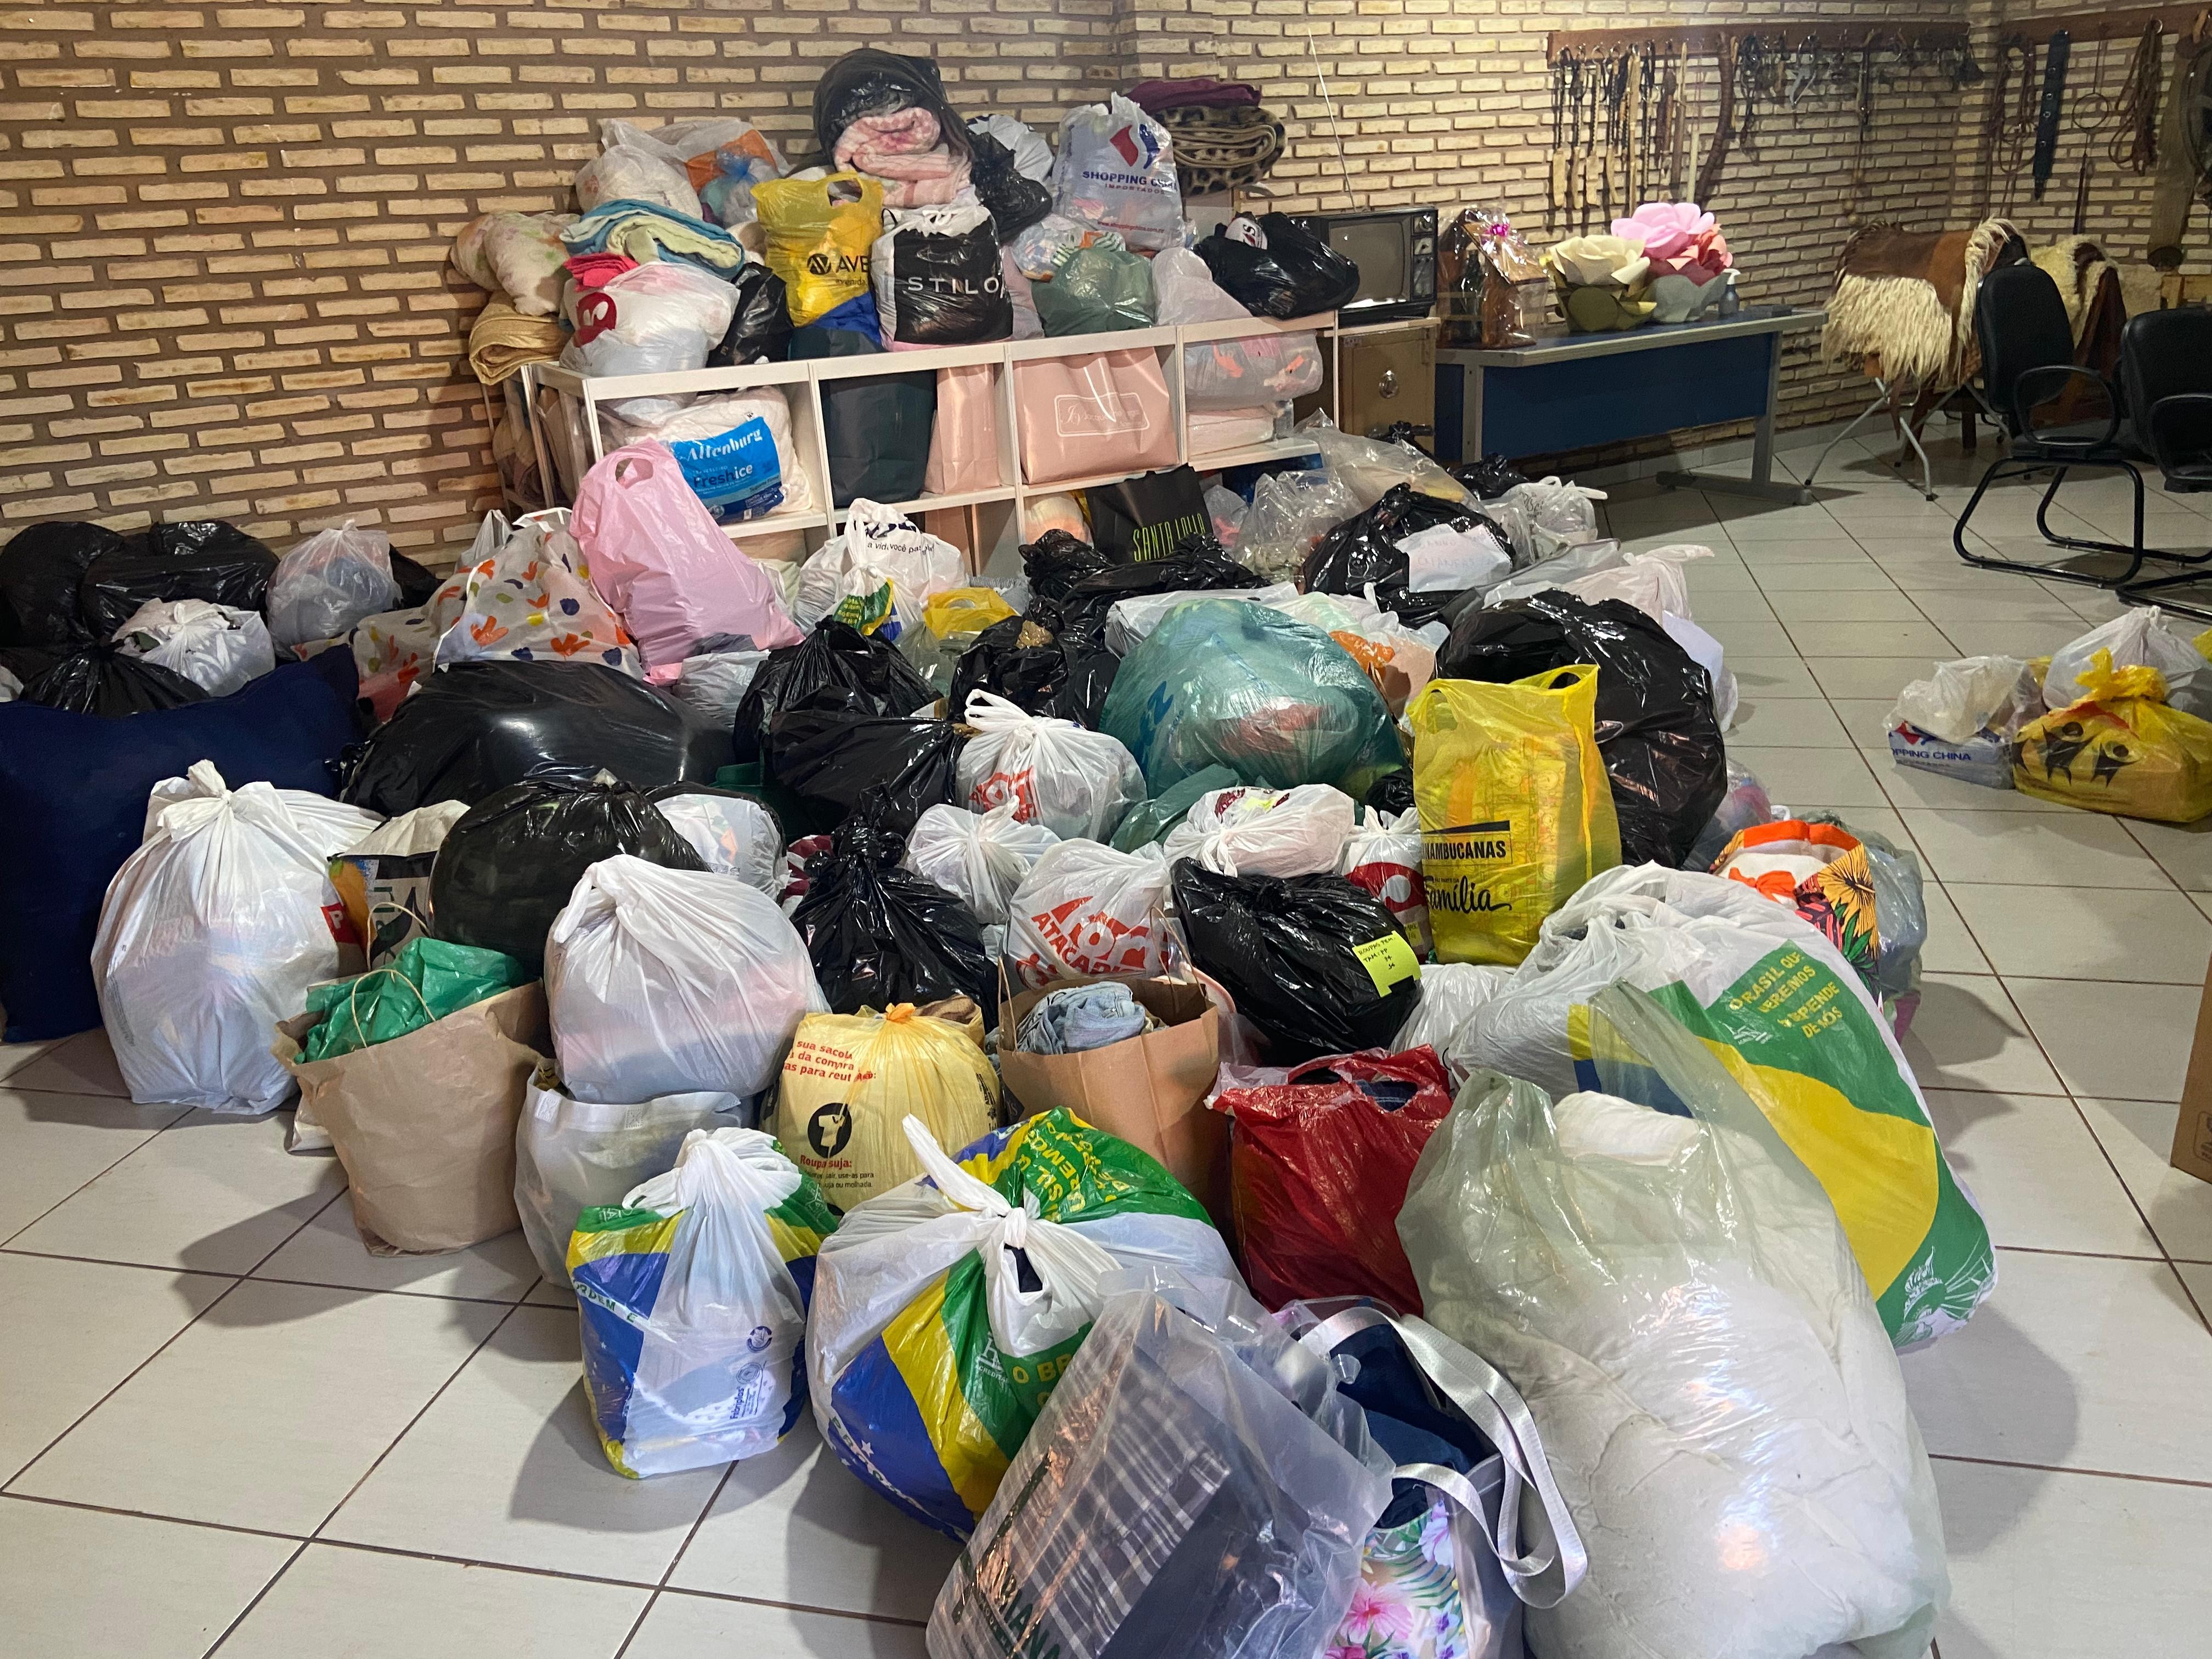 Em 15 dias, voluntários de MS arrecadam mais de mil toneladas de doações para ajudar vítimas das enchentes no RS